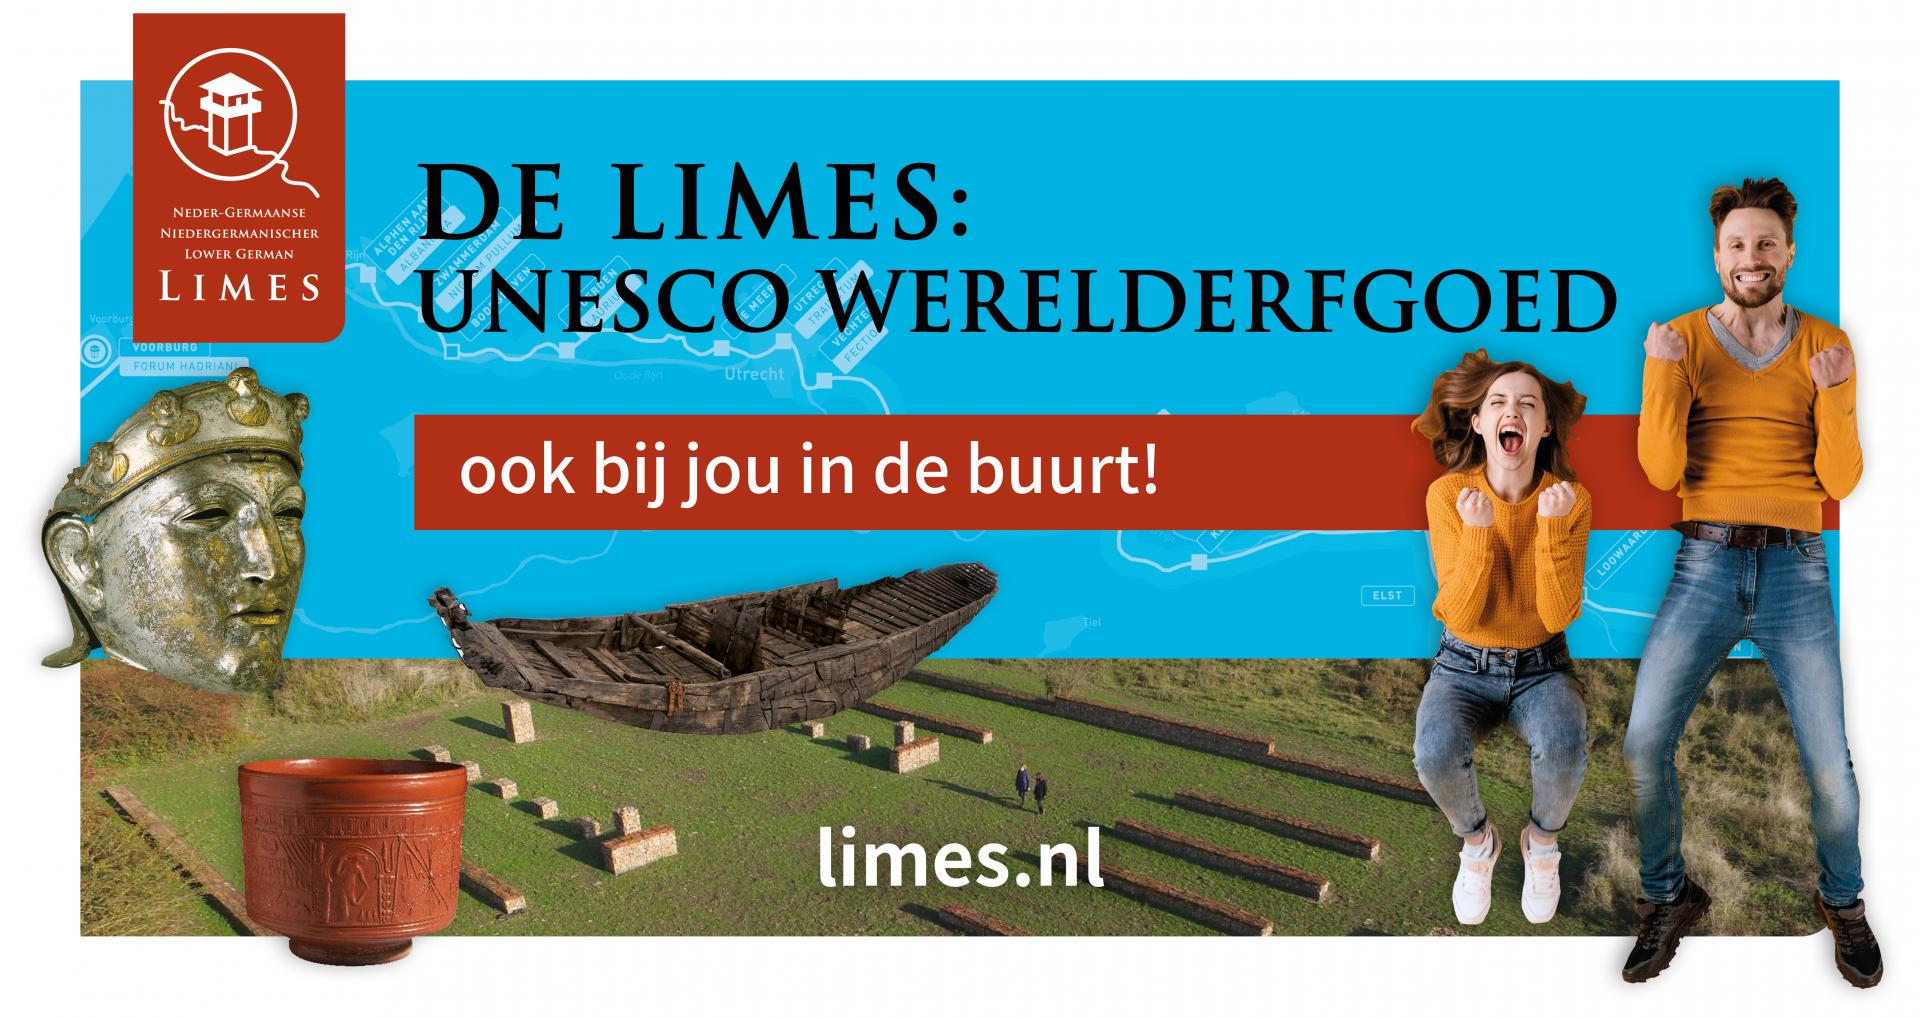 UNESCO-Werelderfgoedstatus voor Limes in Nederland